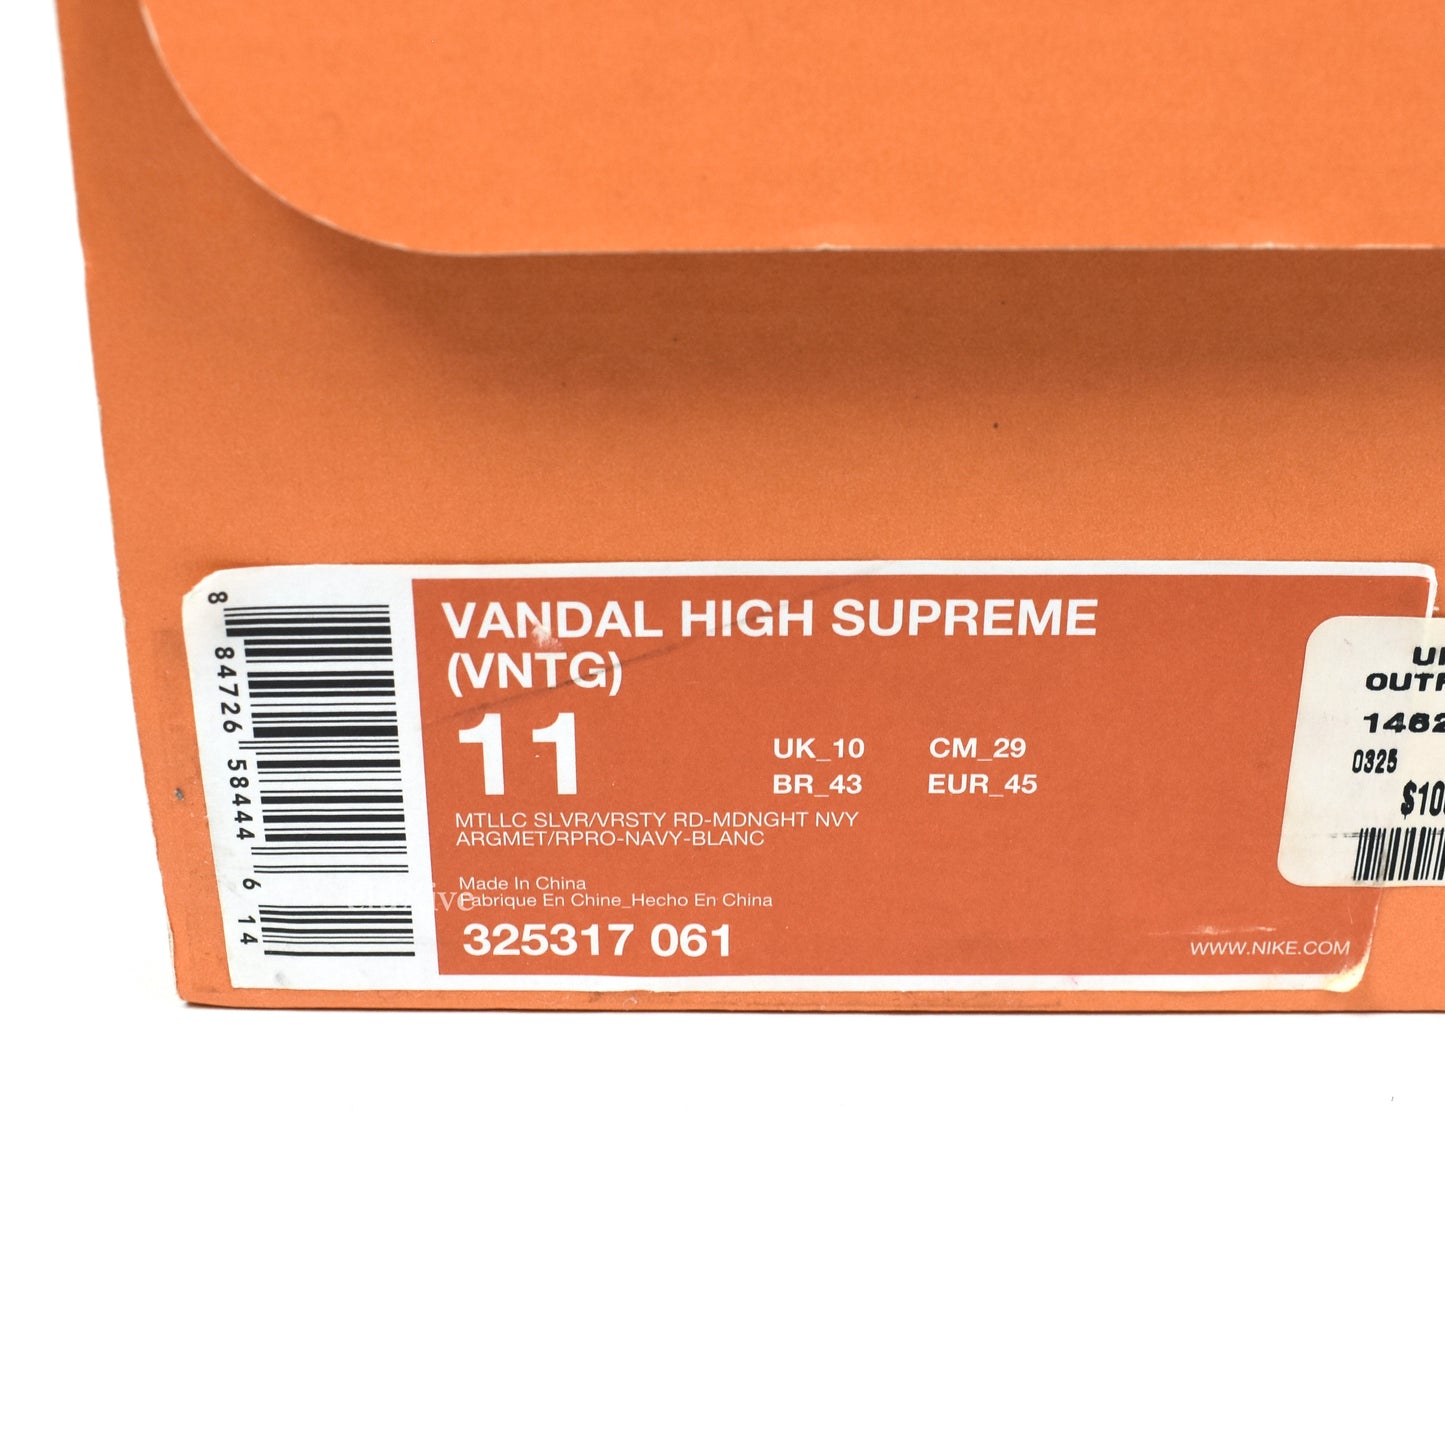 Nike - Vandal High Supreme OG VNTG Metallic Silver (2008)